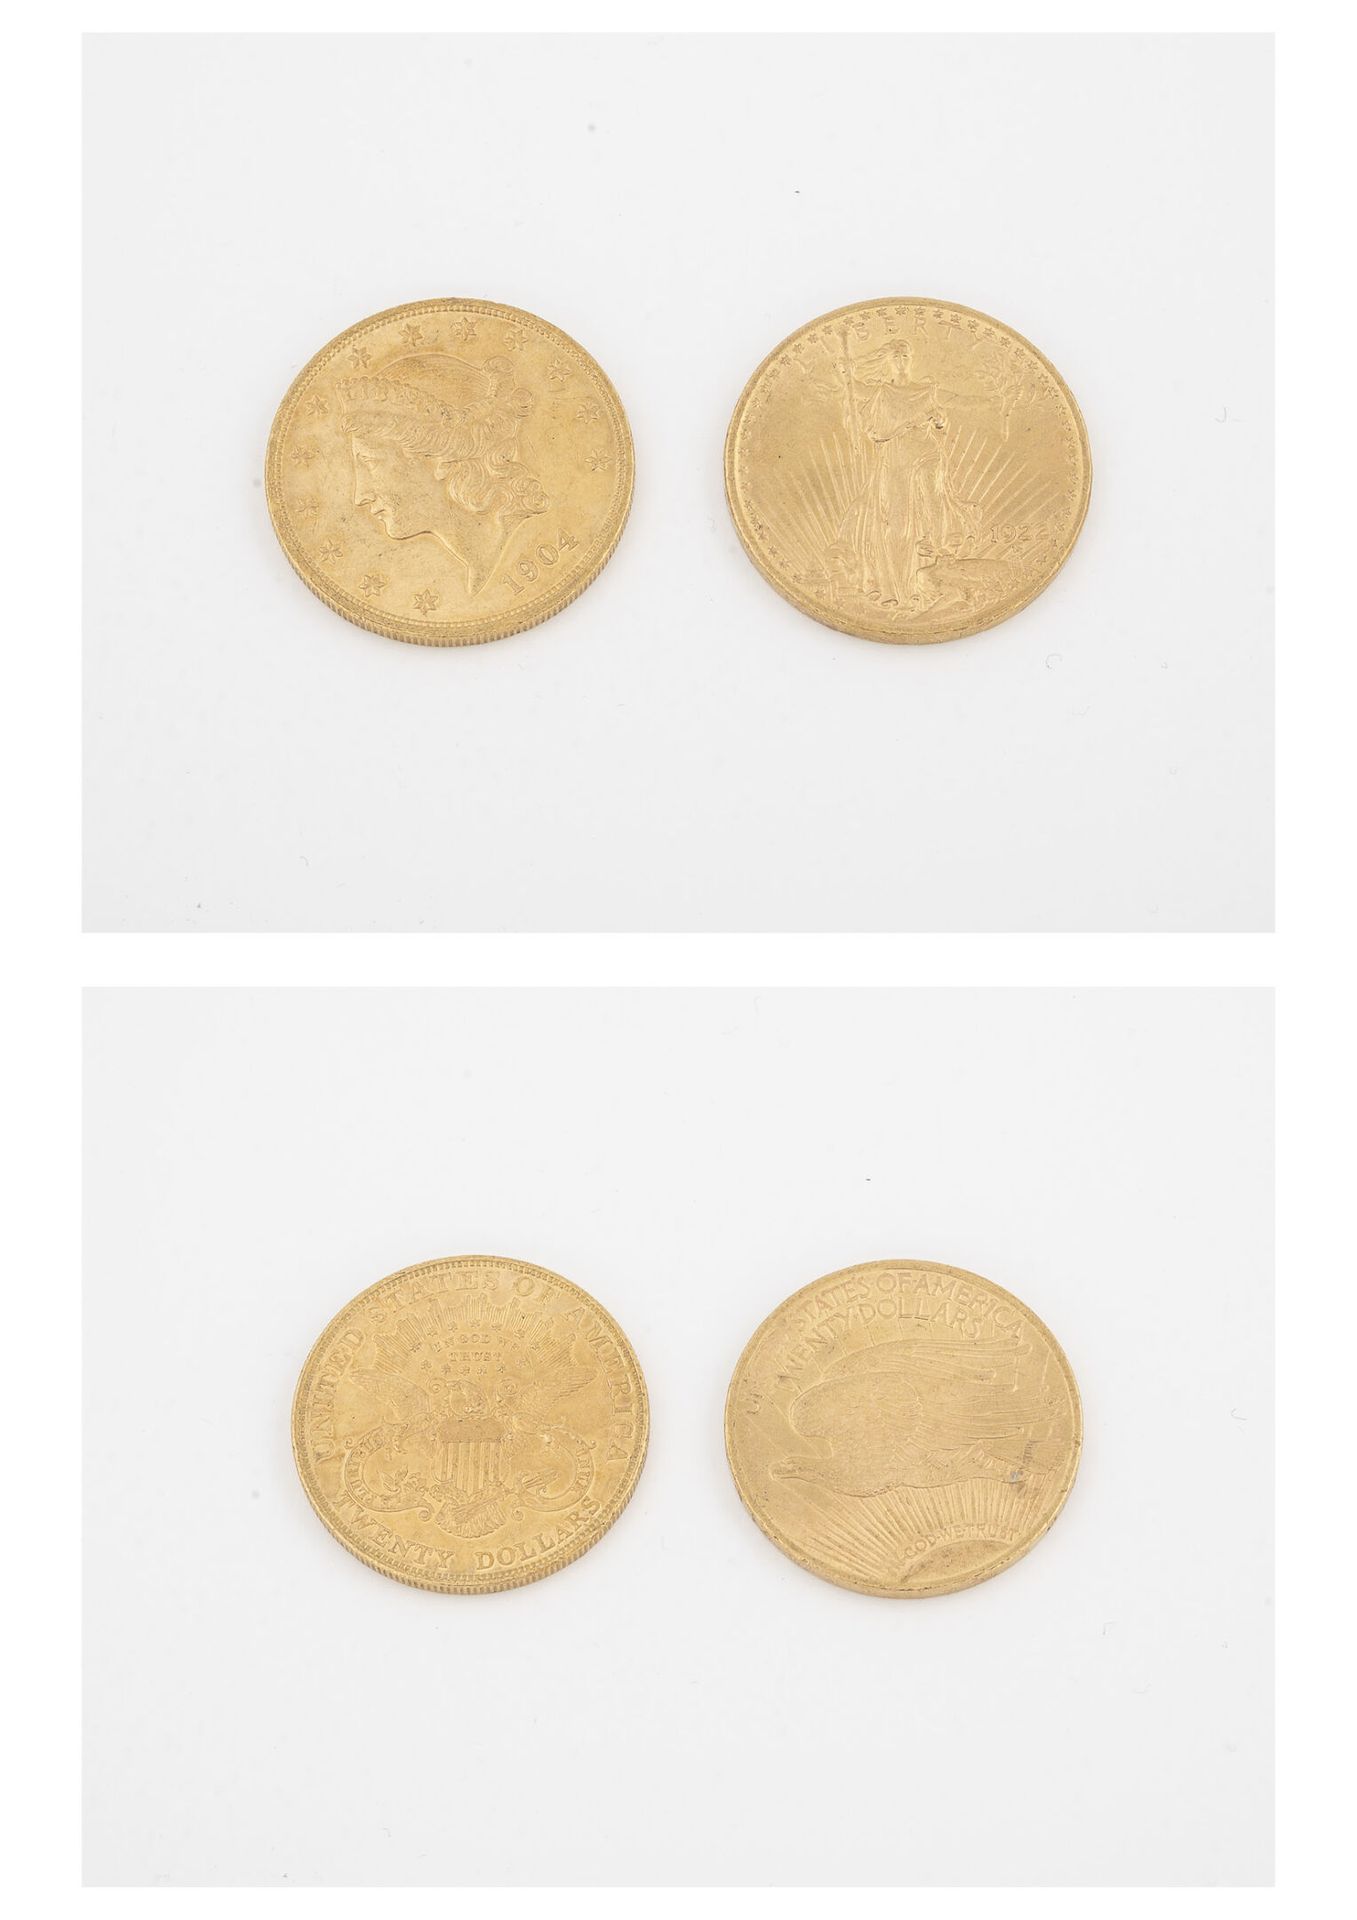 ÉTATS UNIS Zwei 20-Dollar-Goldmünzen, 1904 und 1922. 

Gesamtgewicht: 66,8 g. 

&hellip;